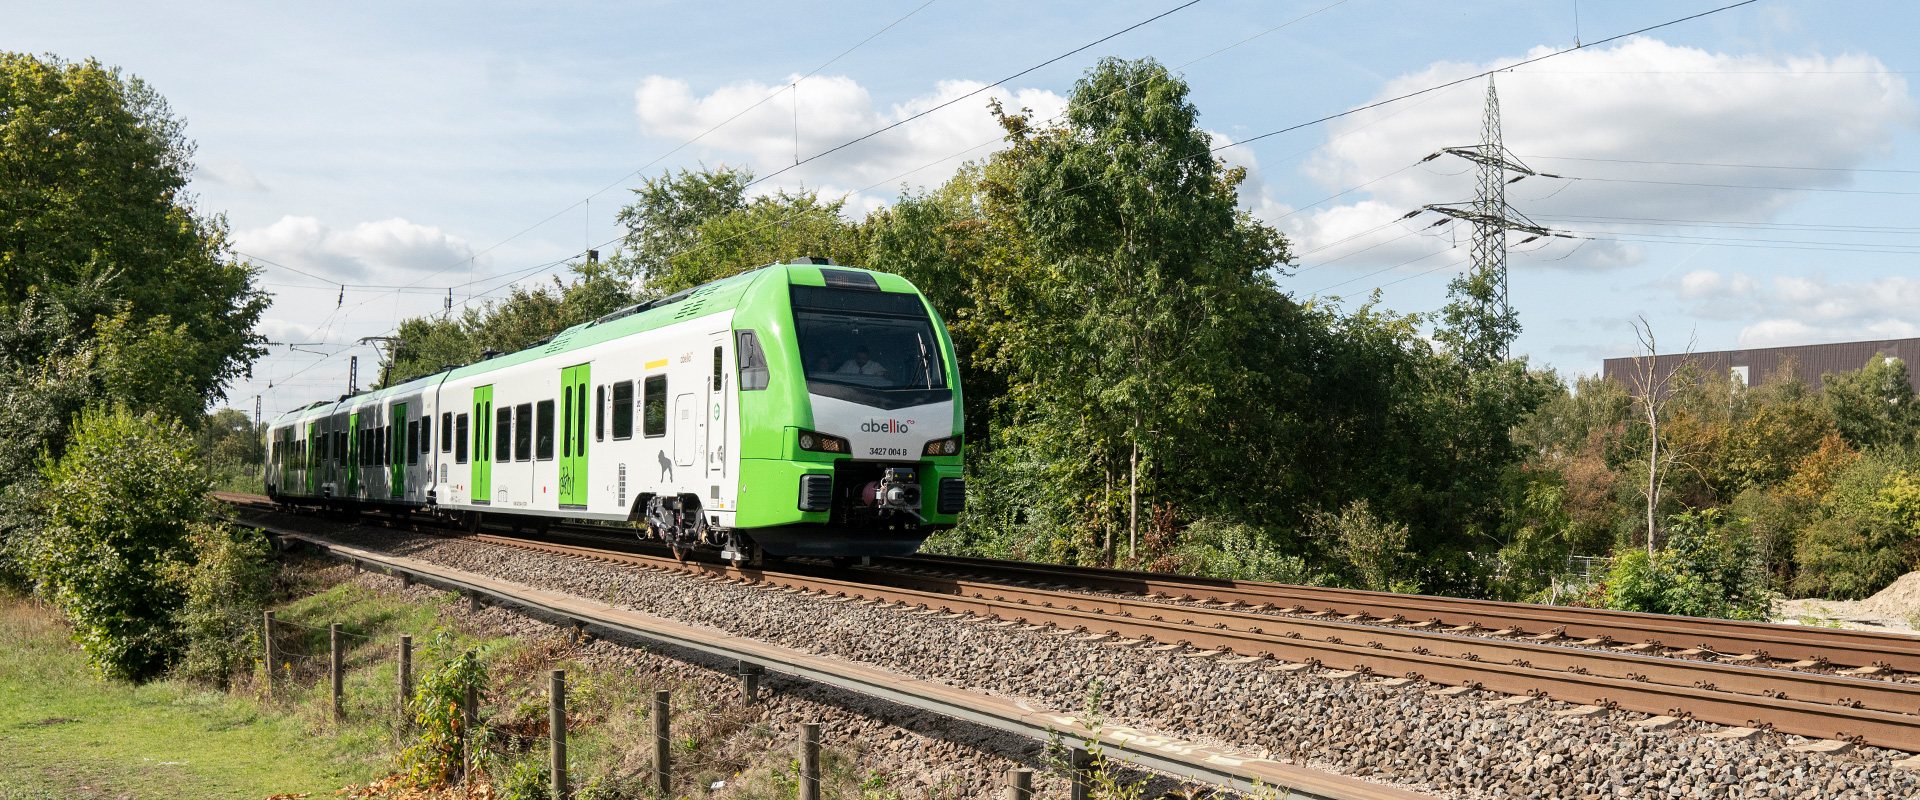 Eine S-Bahn im VRR-Design fährt die Gleise entlang